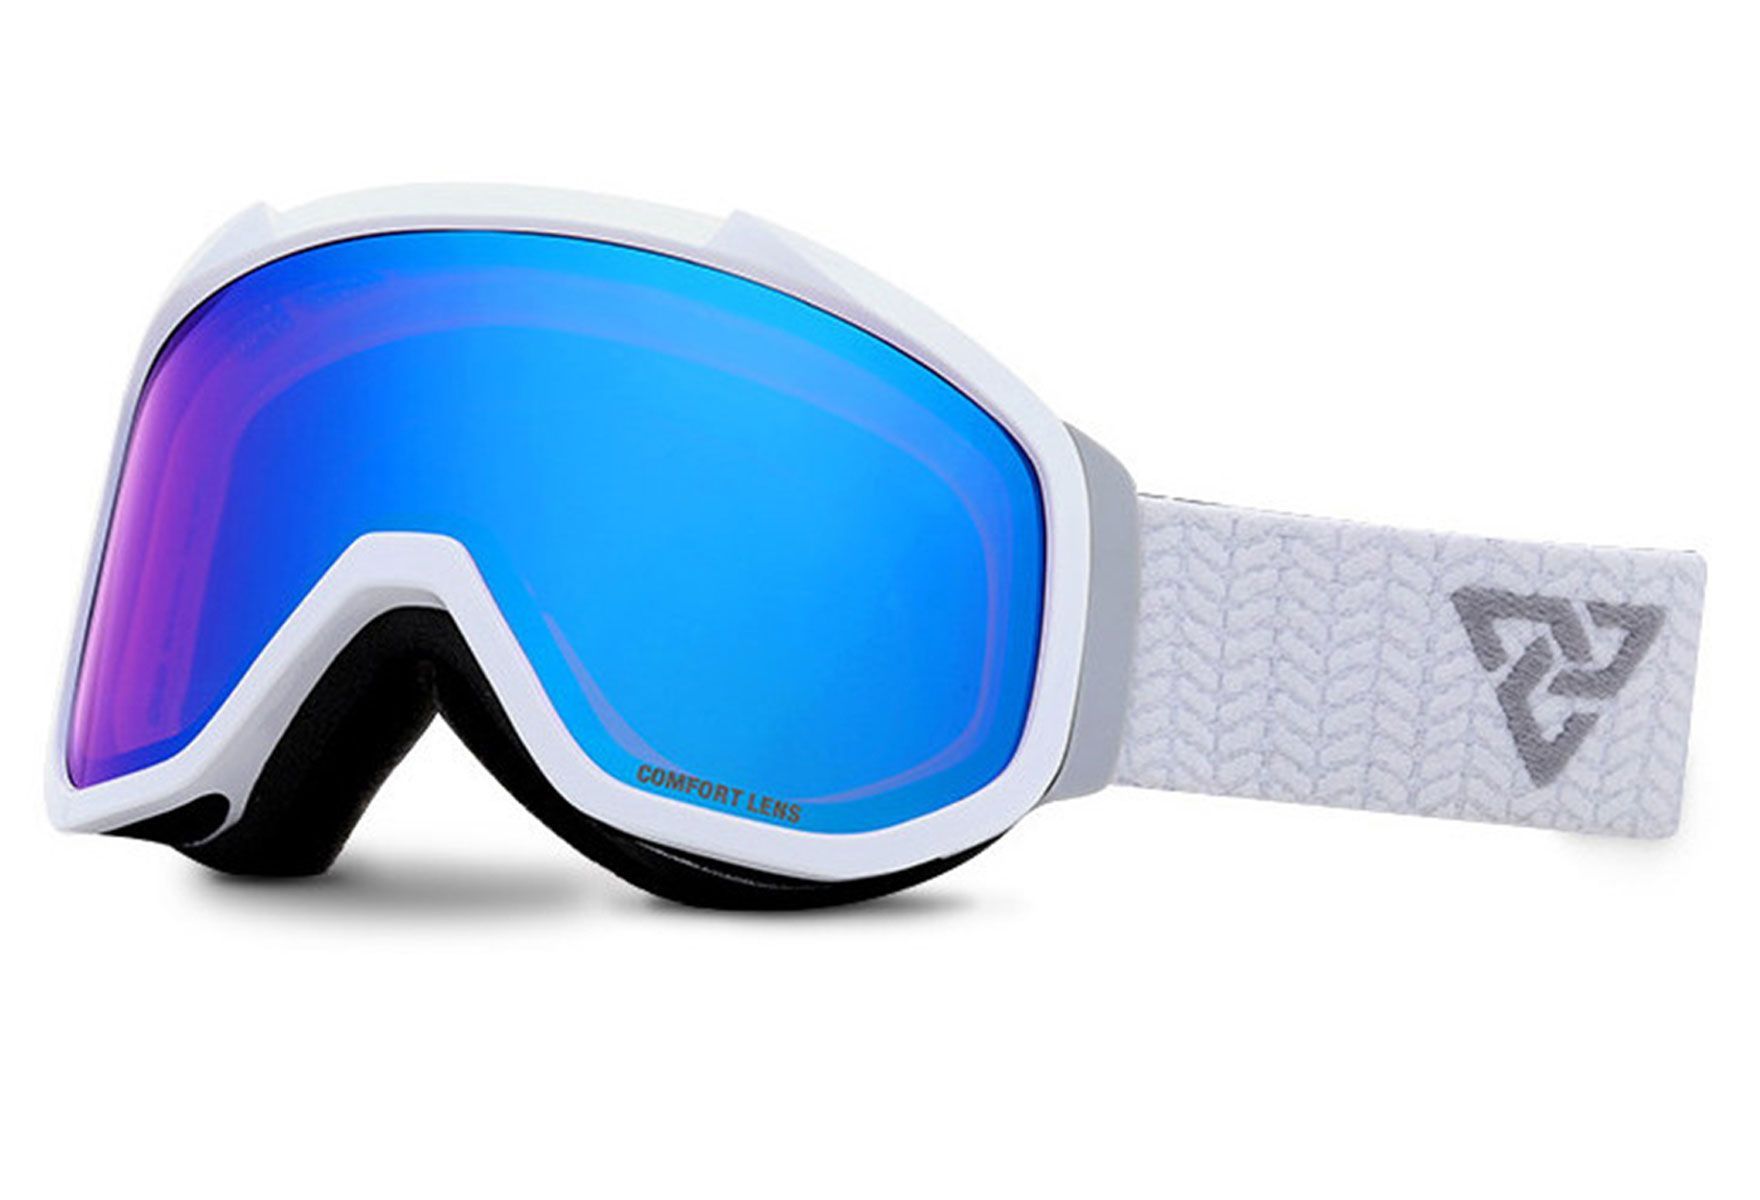 Bilde av Alpinbriller Med Styrke Fra Chercher, Leo (barn 2-6 år) - Hvit, Blå, Rund Hel Ramme I Plast - Medium